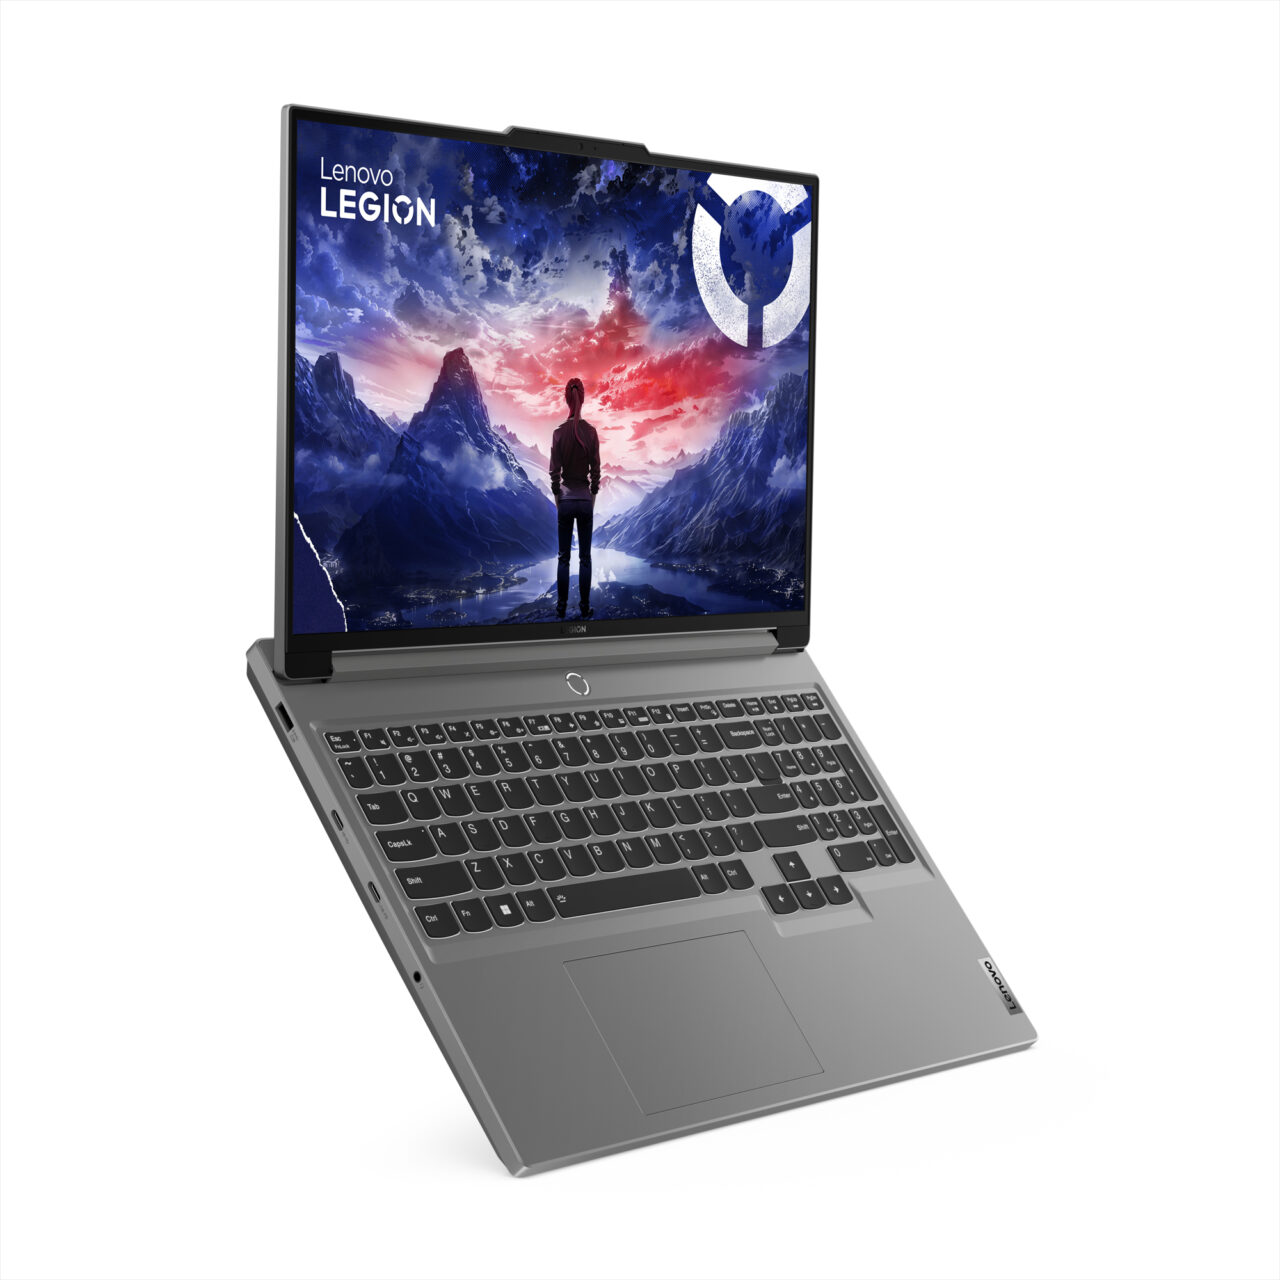 Laptop Lenovo Legion z otwartym ekranem przedstawiającym ilustrację osoby stojącej na tle górskiego krajobrazu o zachodzie słońca.